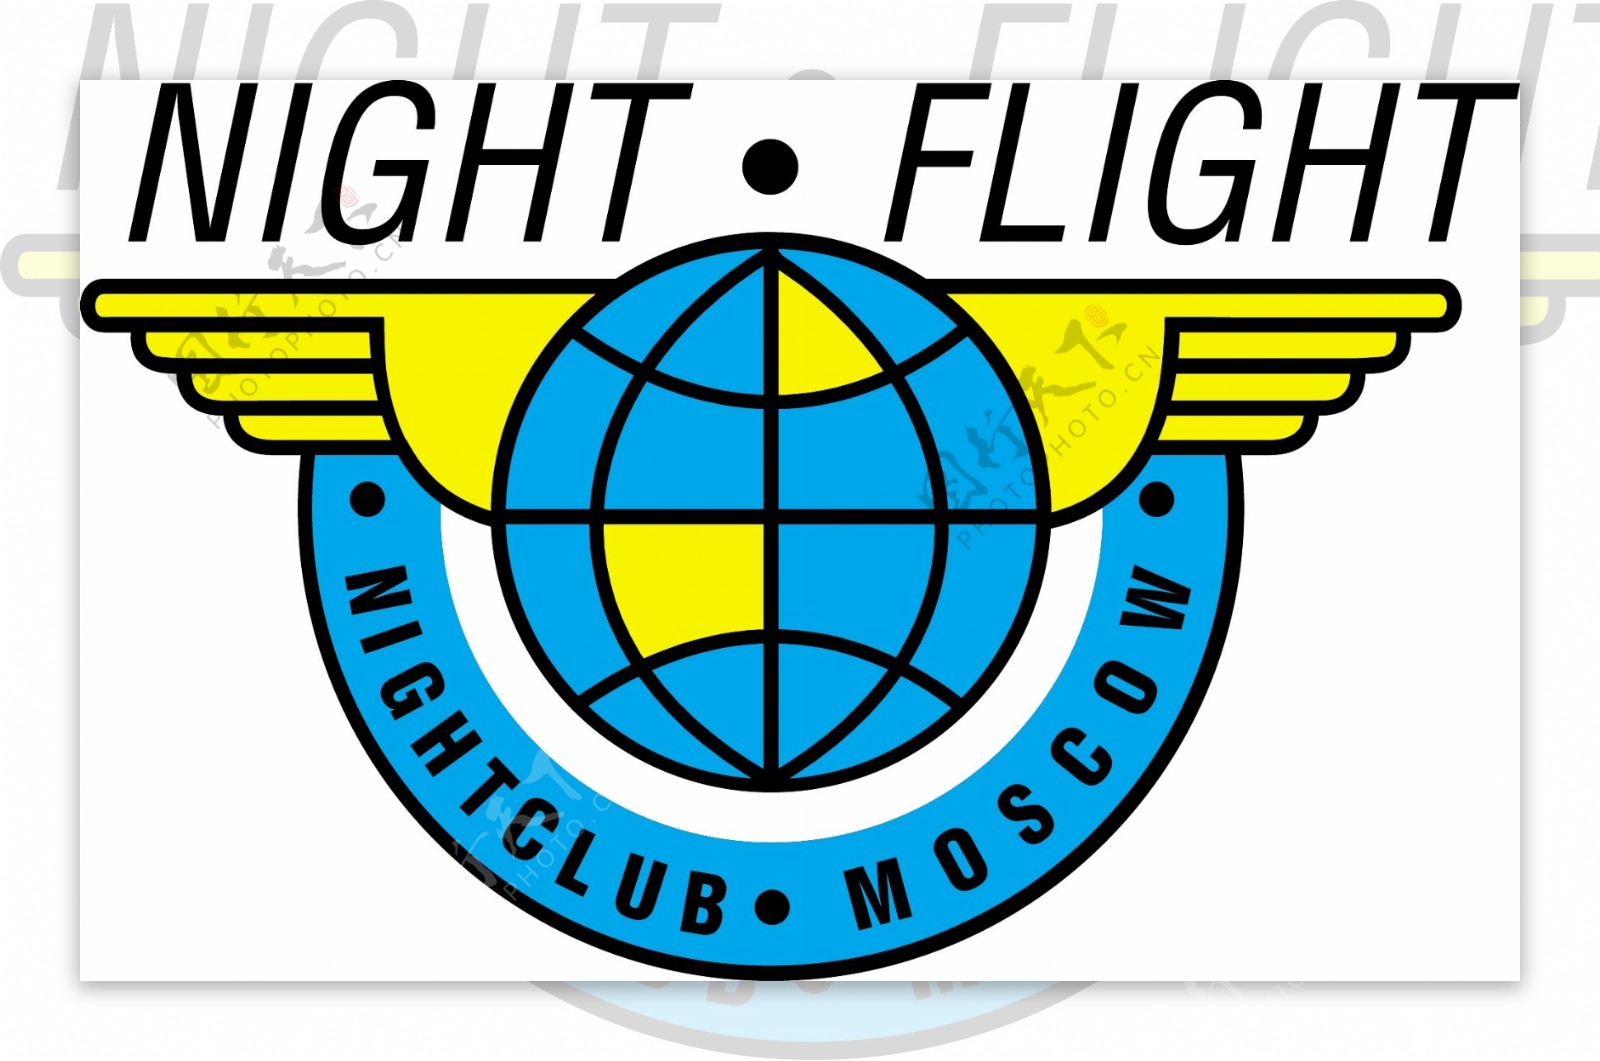 夜间飞行标志LOGO矢量格式AIIllustrator和EPS免费下载载体